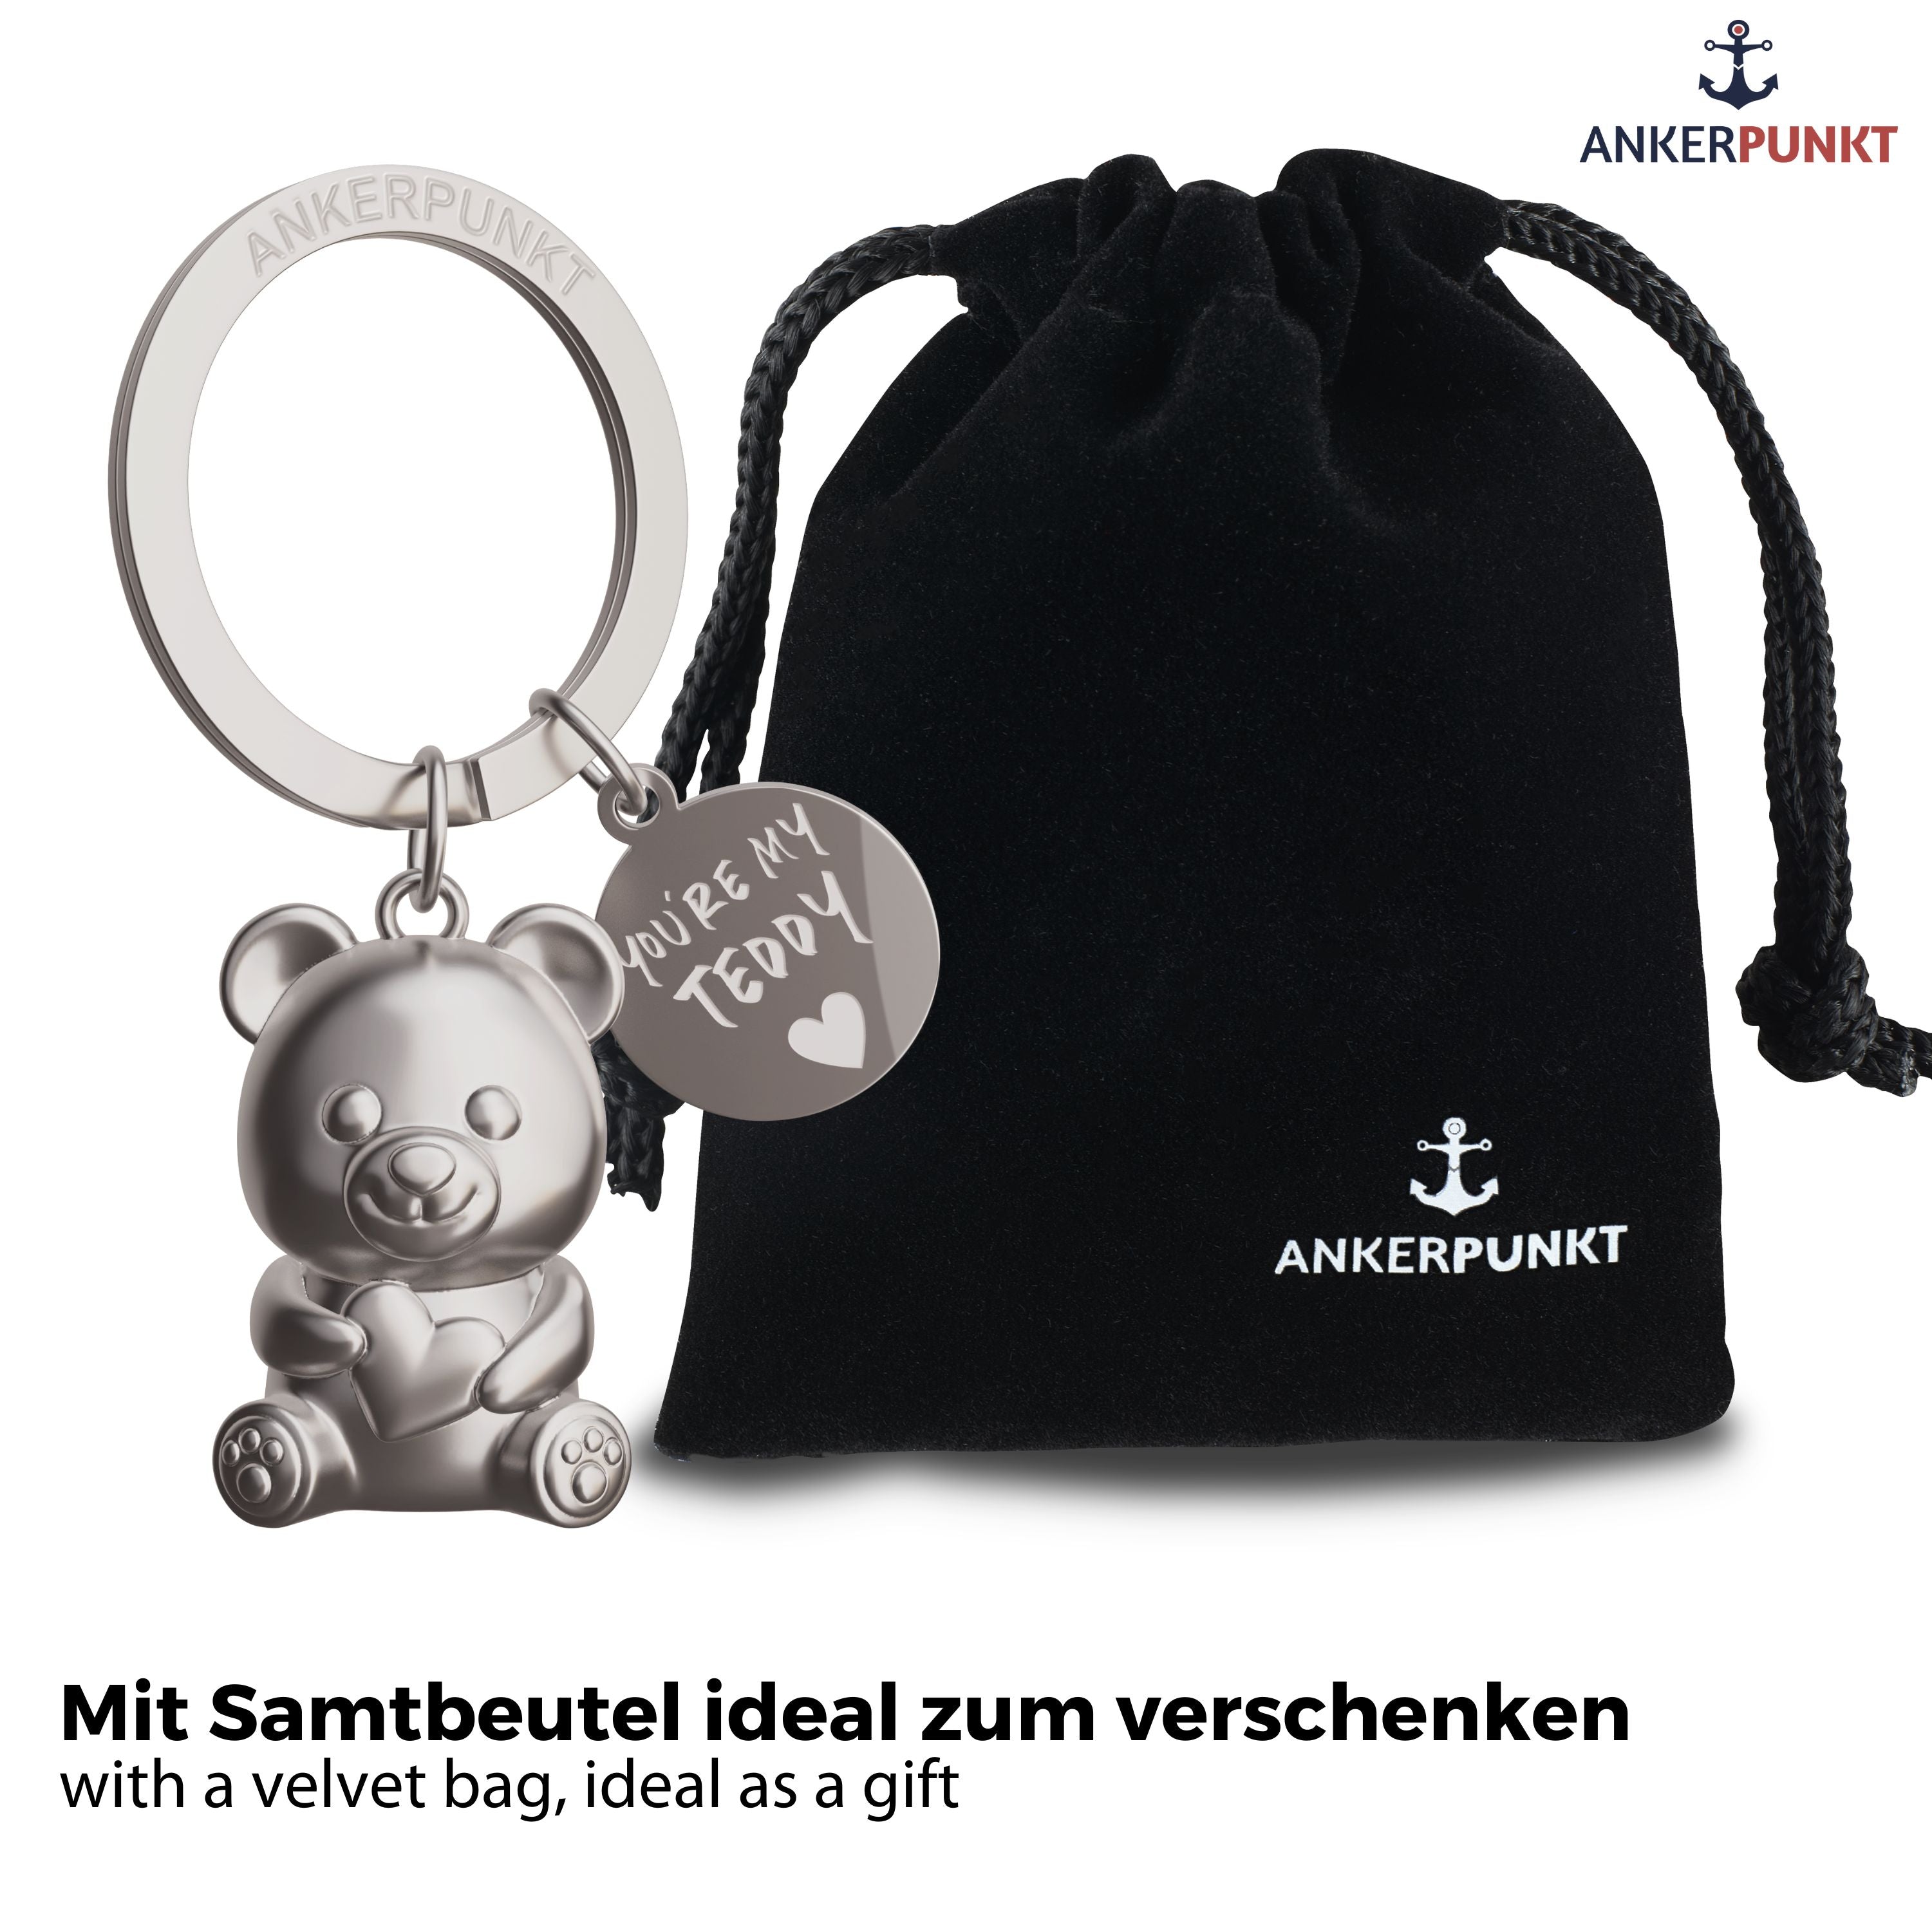 Teddybär Schlüsselanhänger in silbermatt mit Anhängerplättchen mit Gravur "You're my Teddy", daneben ein Samtbeutel mit Ankerpunkt-Logo